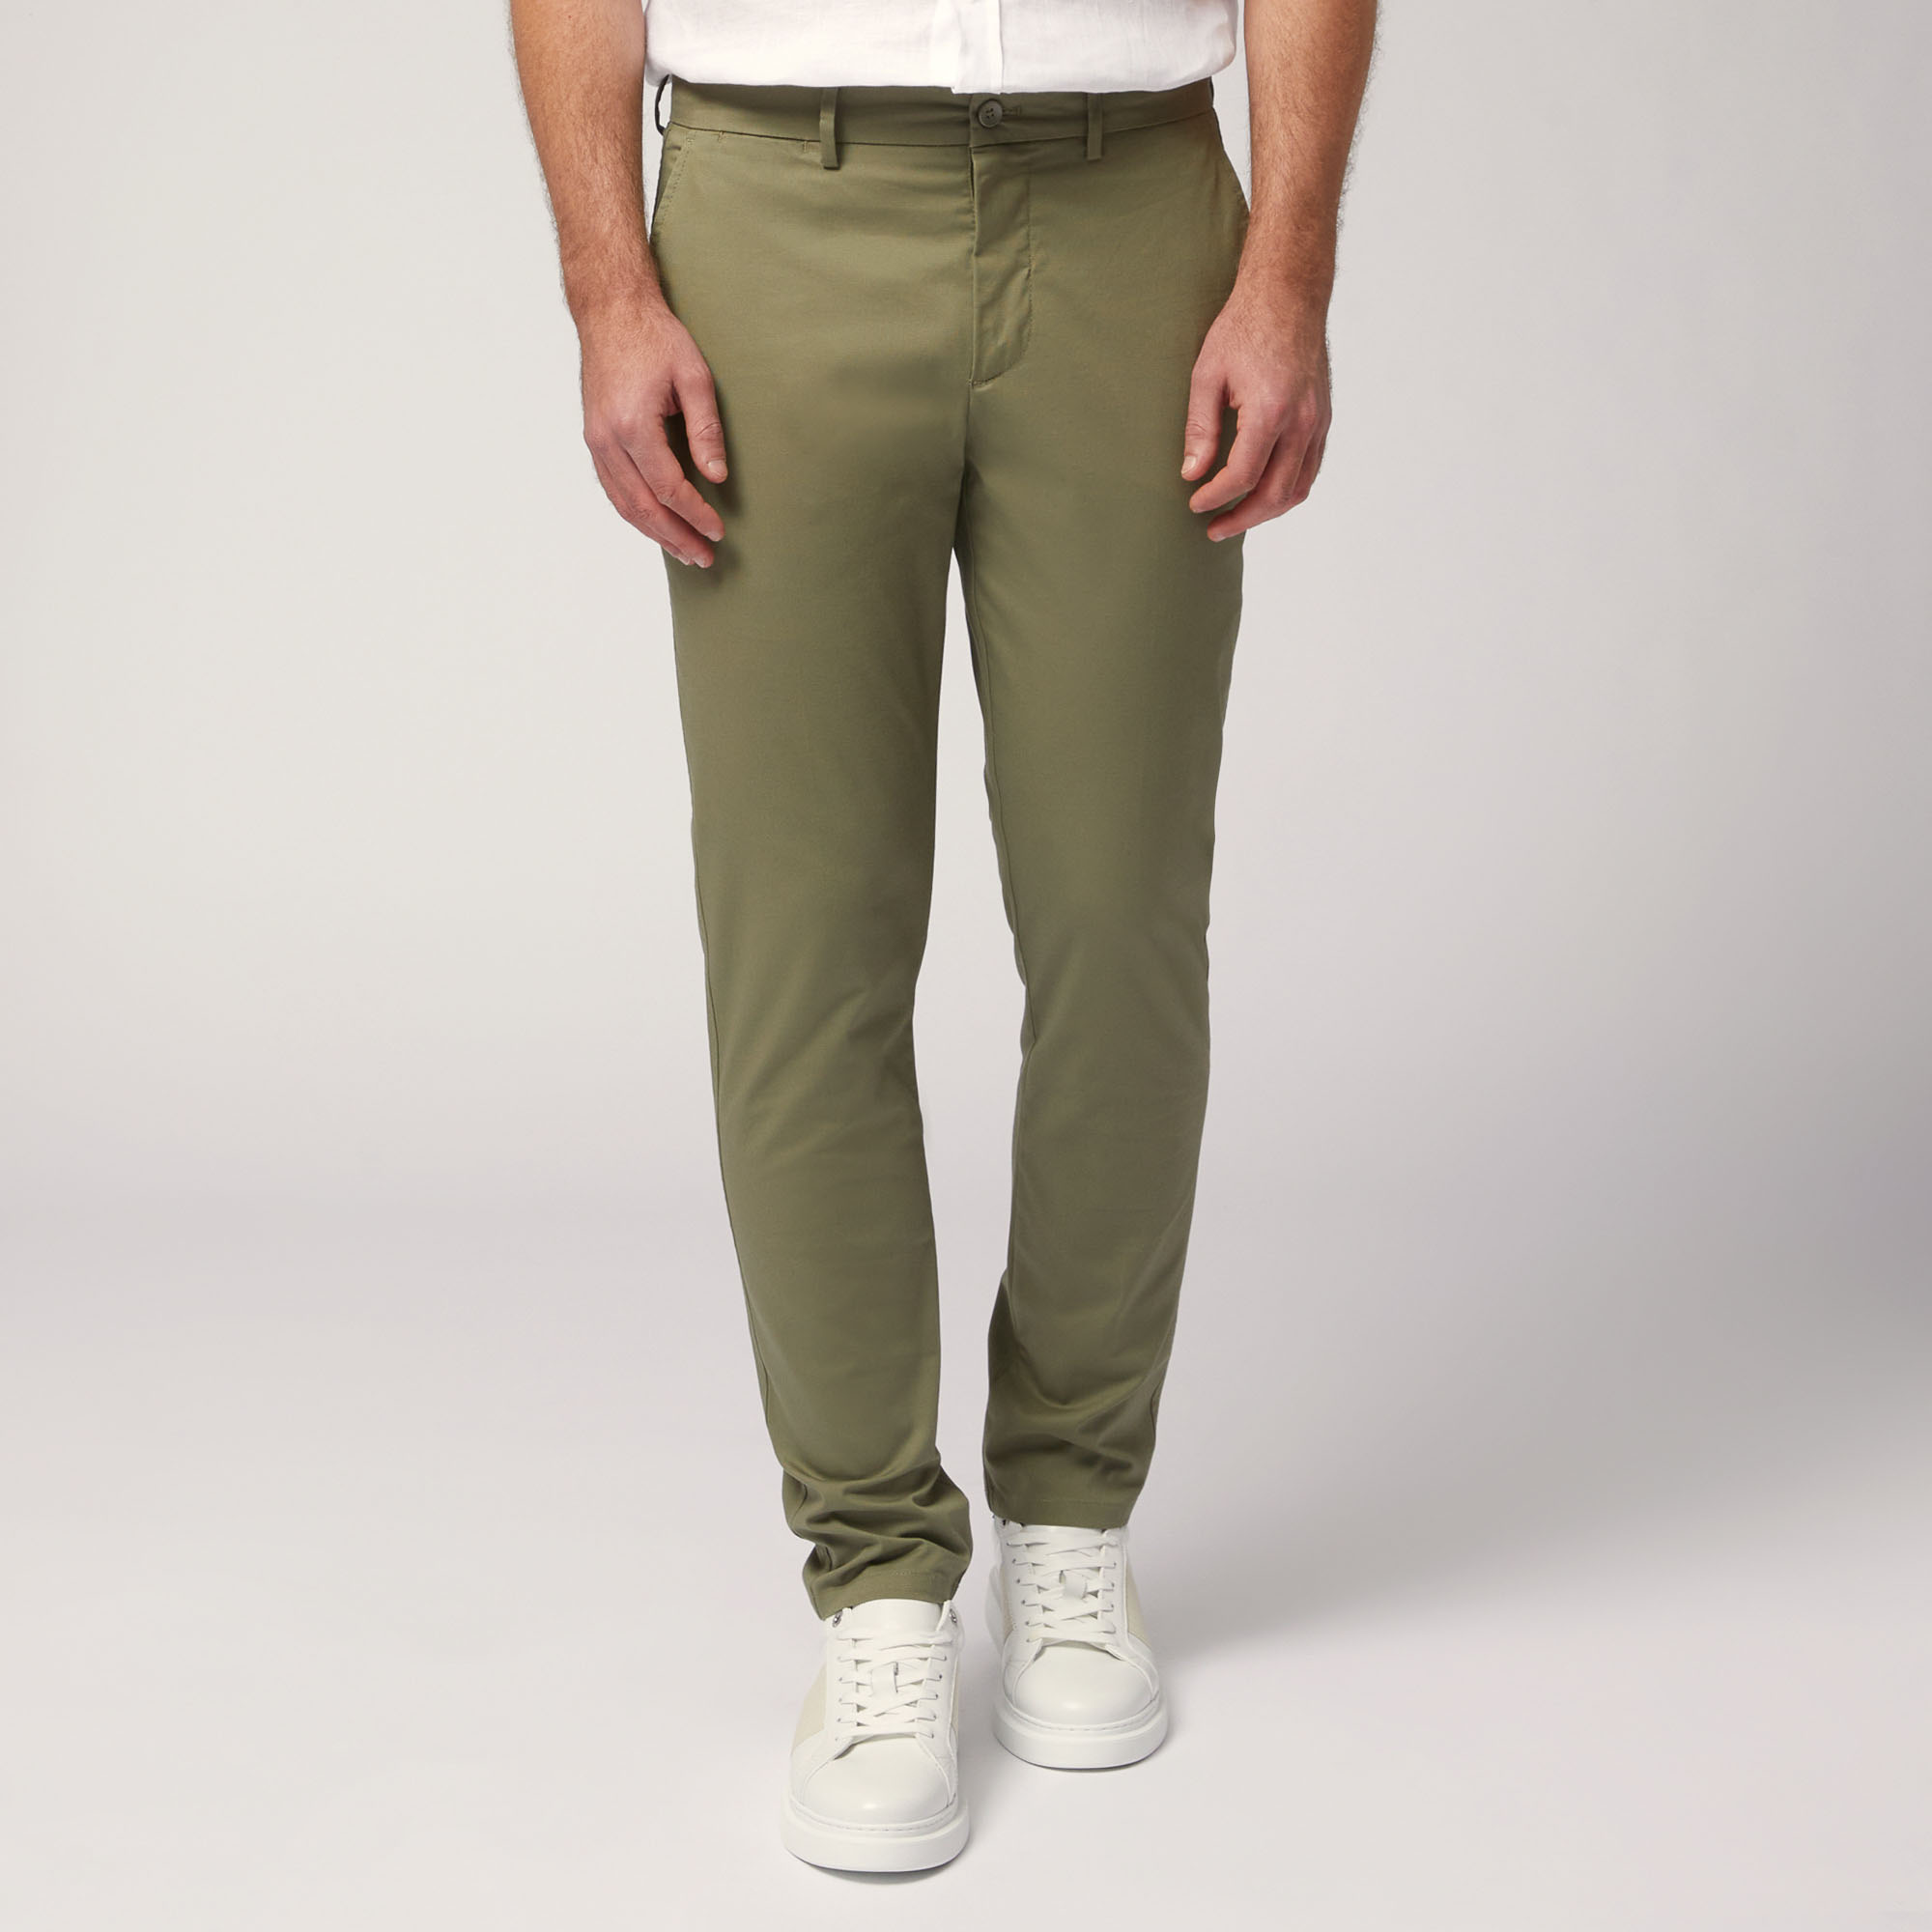 Narrow Fit Chino Pants, Green, large